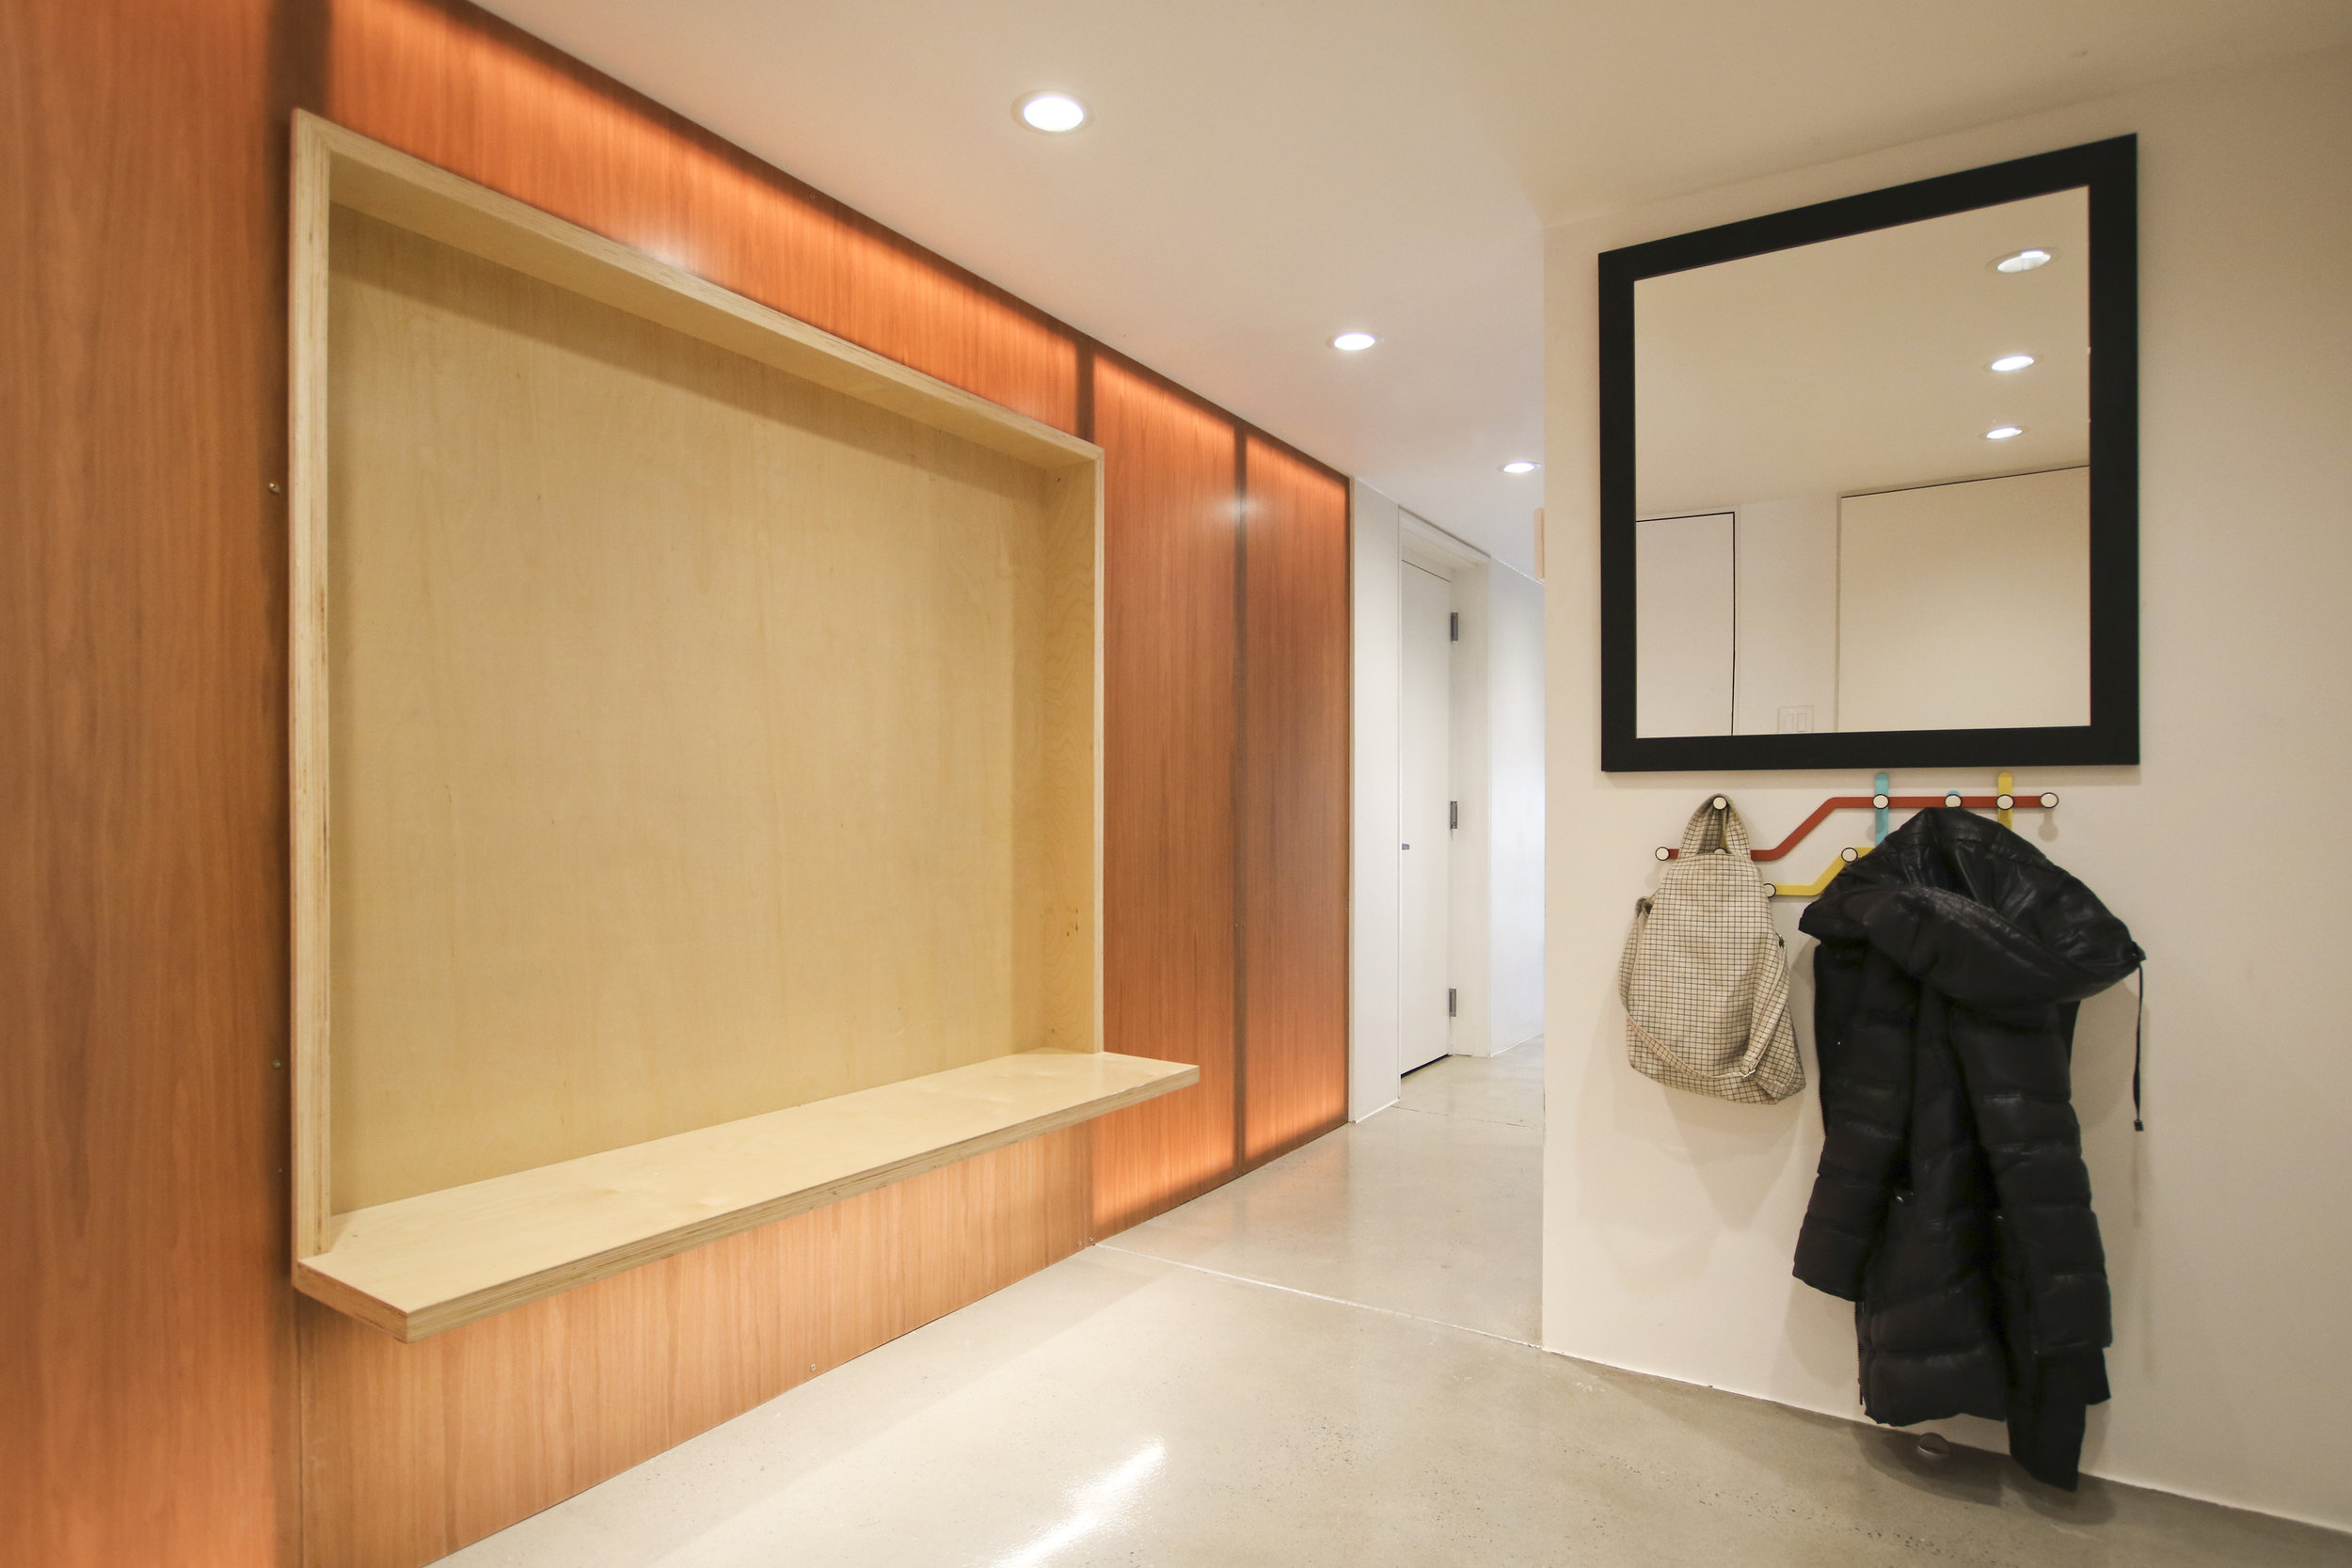 res4-resoltuion-4-architecture-modern-brownstone-home-renovation-interior-hallway-builtin-furniture.jpg